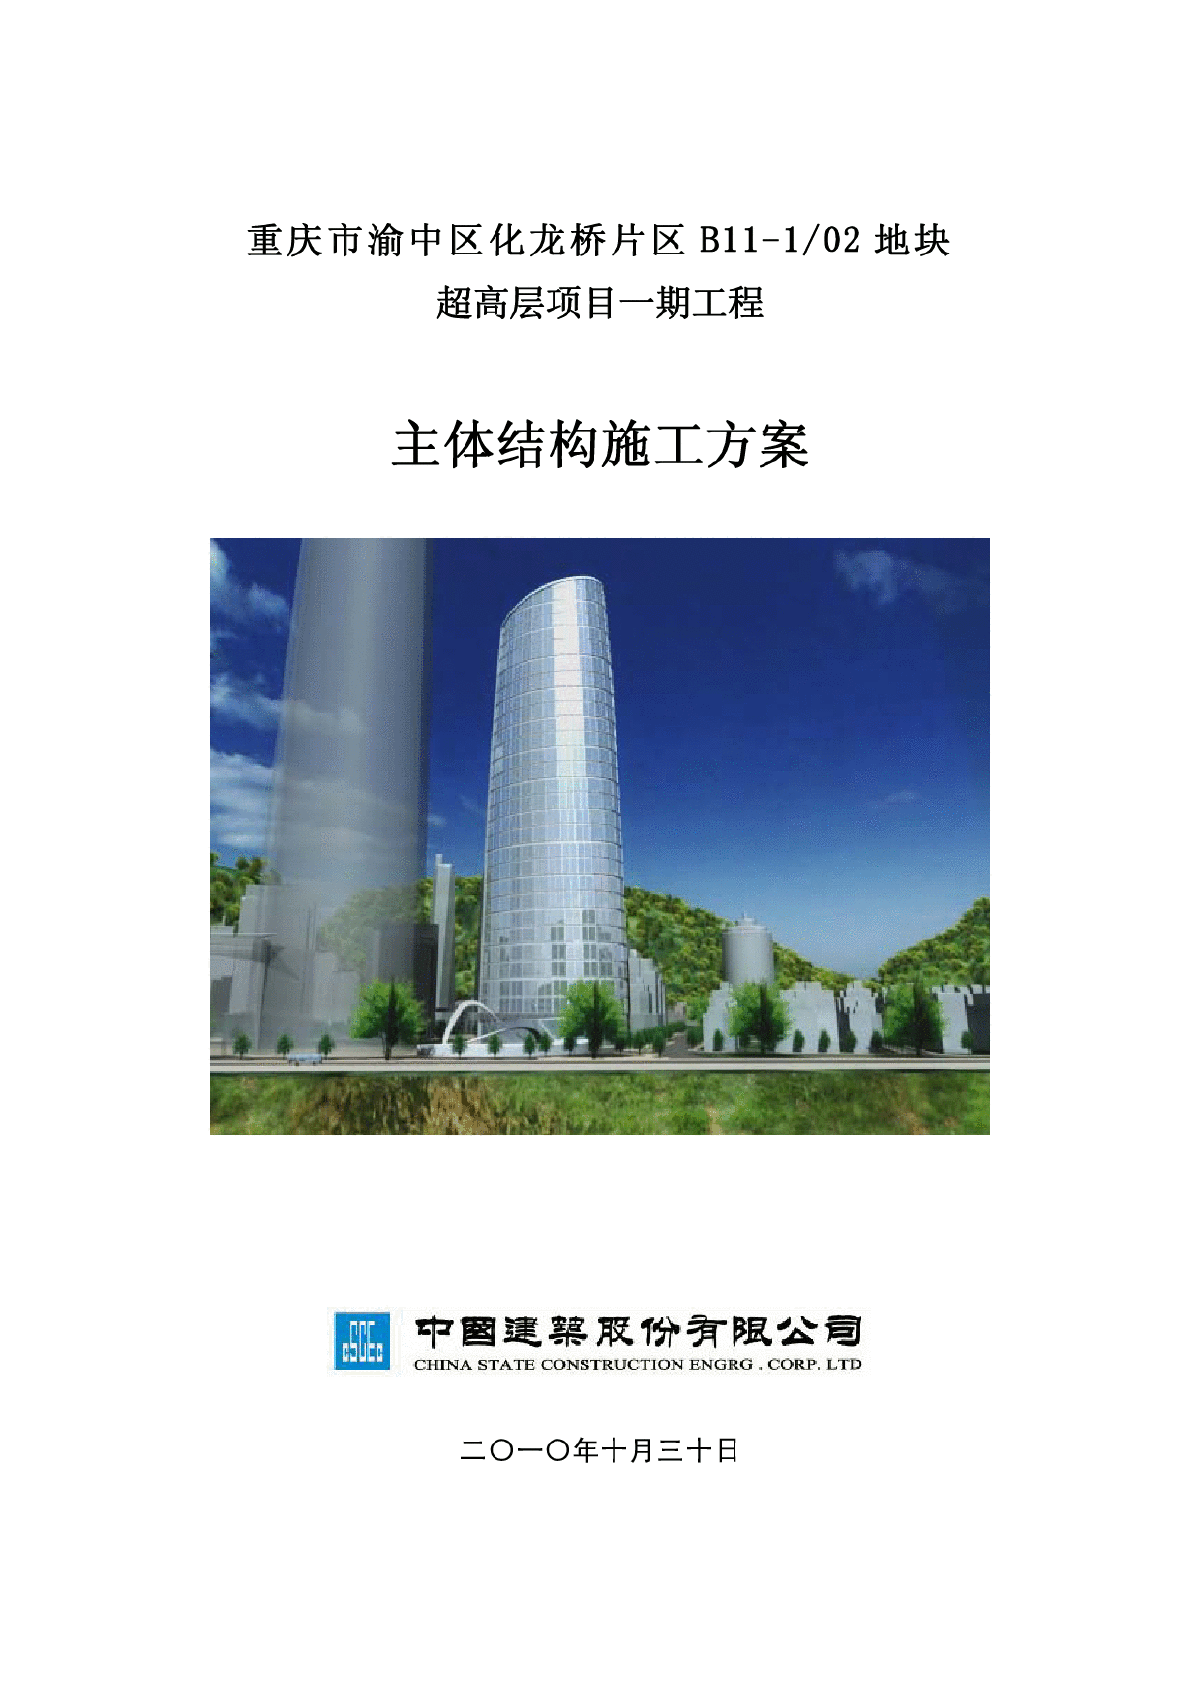 重庆市渝中区化龙桥片区 B11-1/02 地块超高层项目一期工程主体结构施工方案